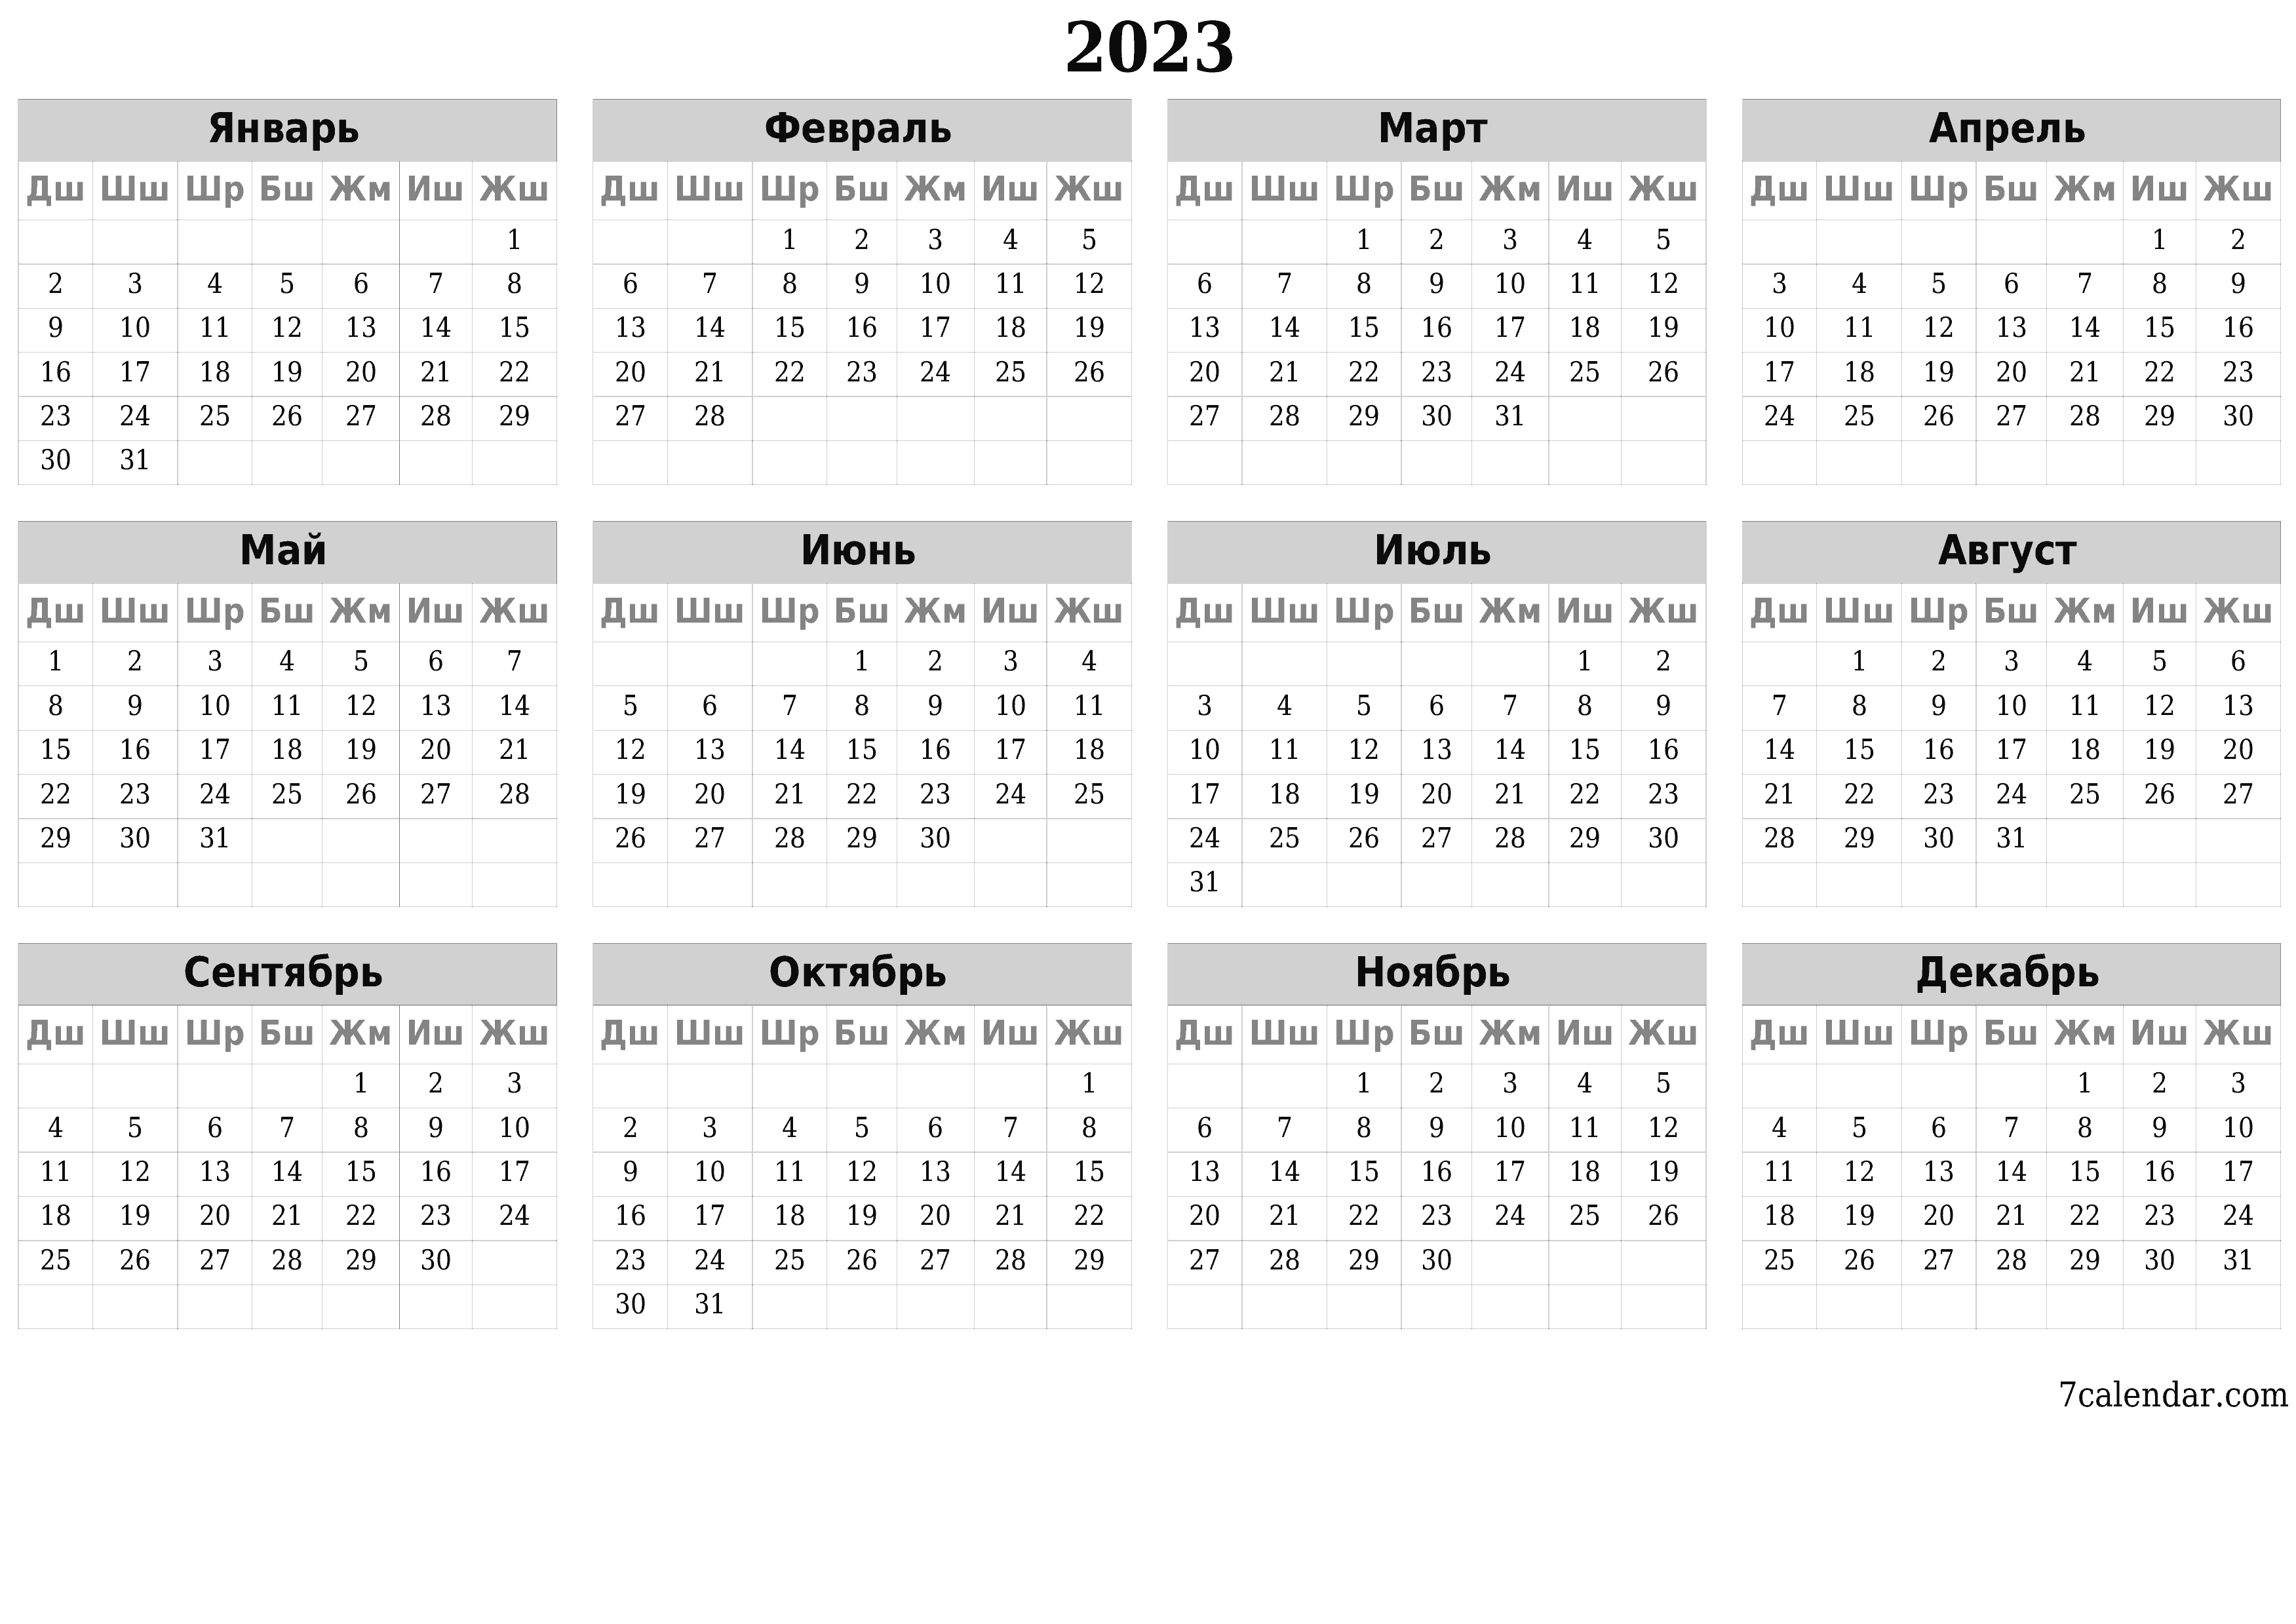 басма ь дубал ы шаблон акысыз ьгоризонталдуу Жыл сайын календар Жалган куран (Мар) 2023